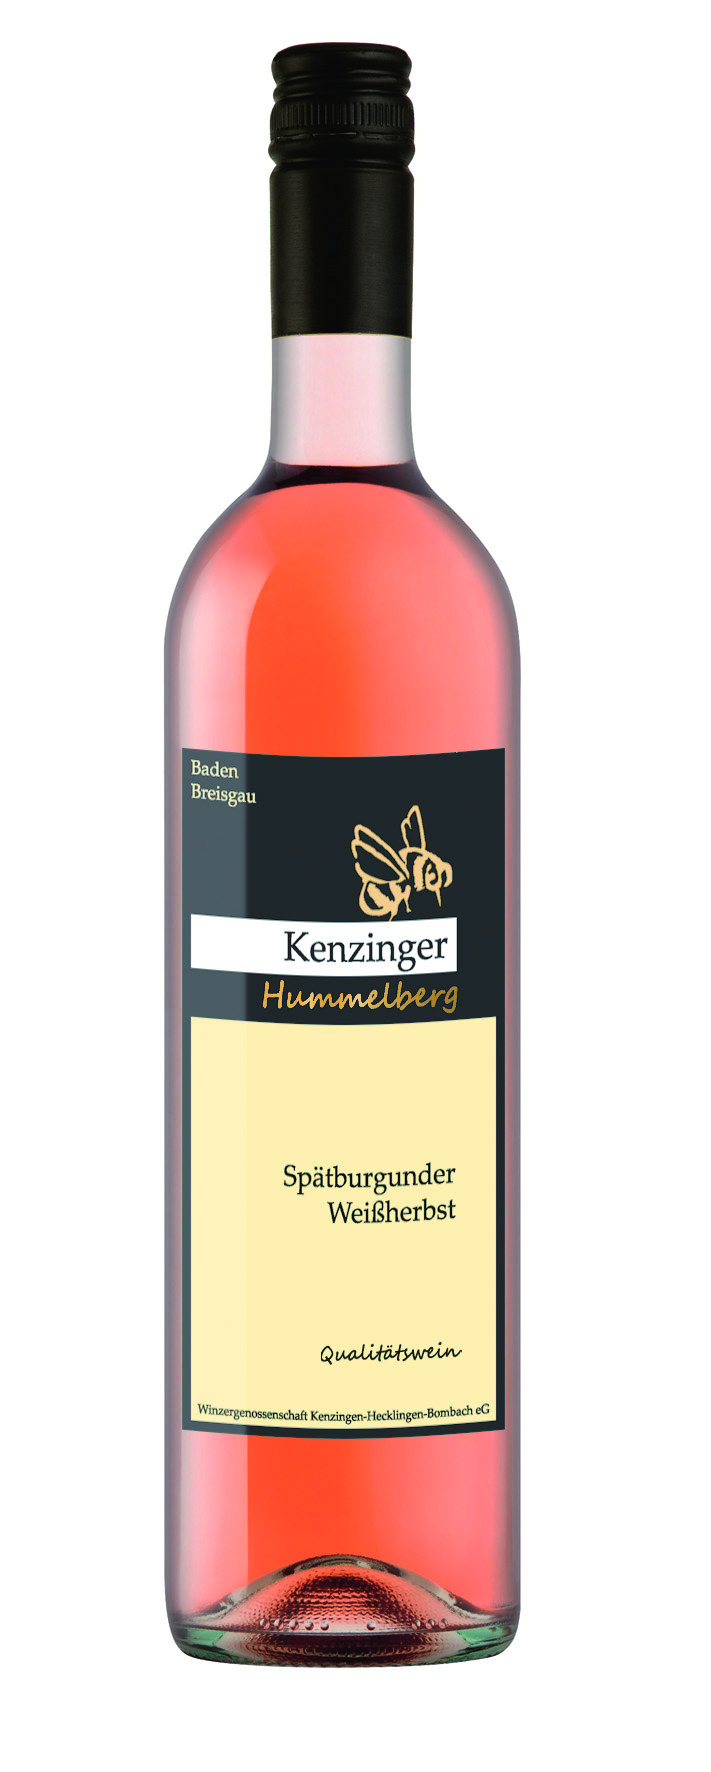 Breisgau Kenzinger Hummelberg Spätb.-Weissherbst Qualitätswein